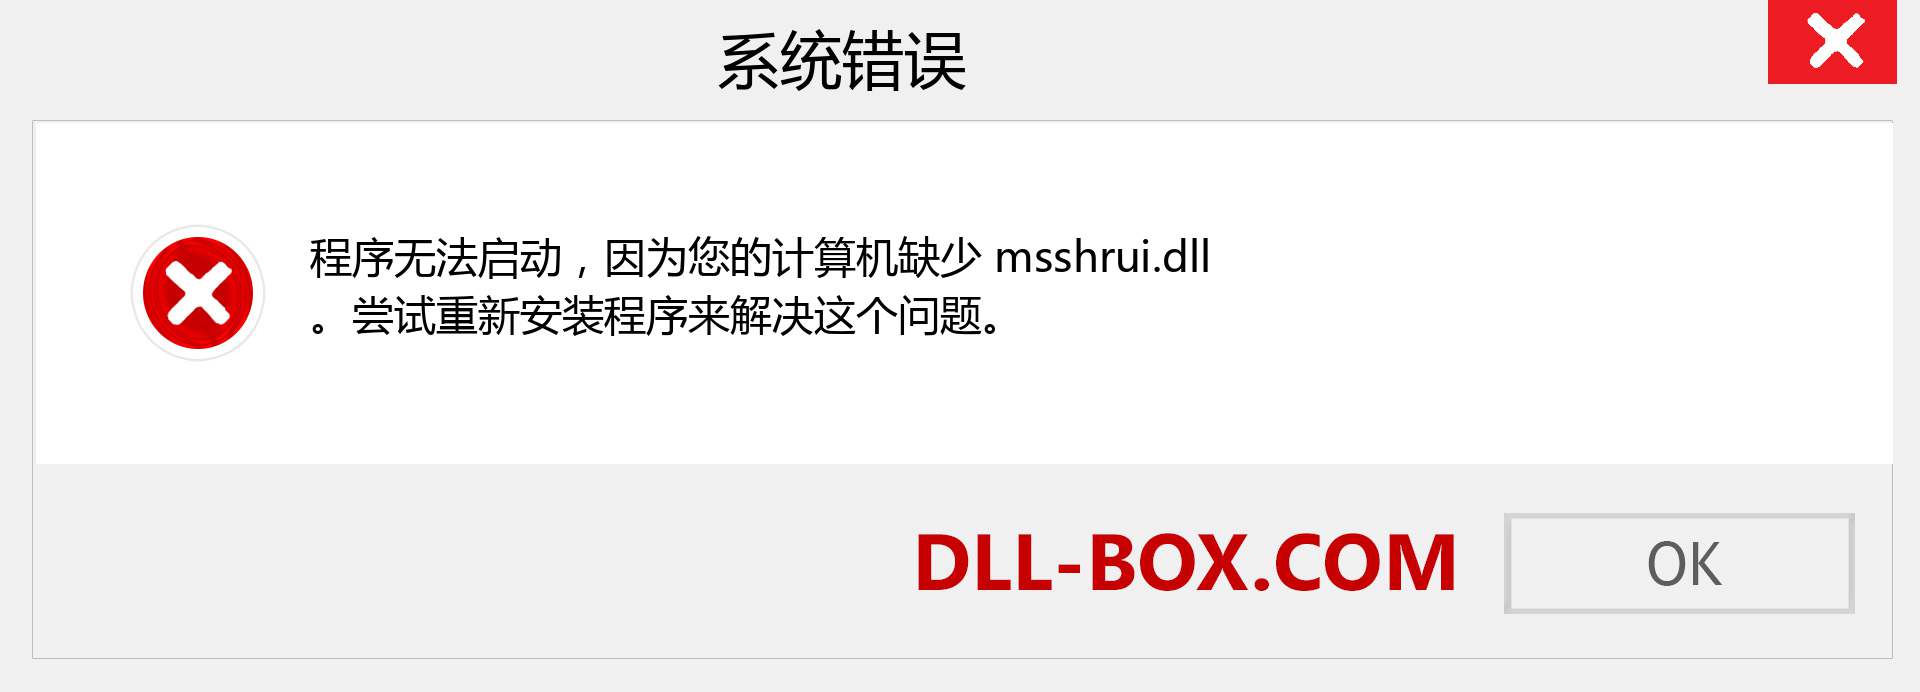 msshrui.dll 文件丢失？。 适用于 Windows 7、8、10 的下载 - 修复 Windows、照片、图像上的 msshrui dll 丢失错误